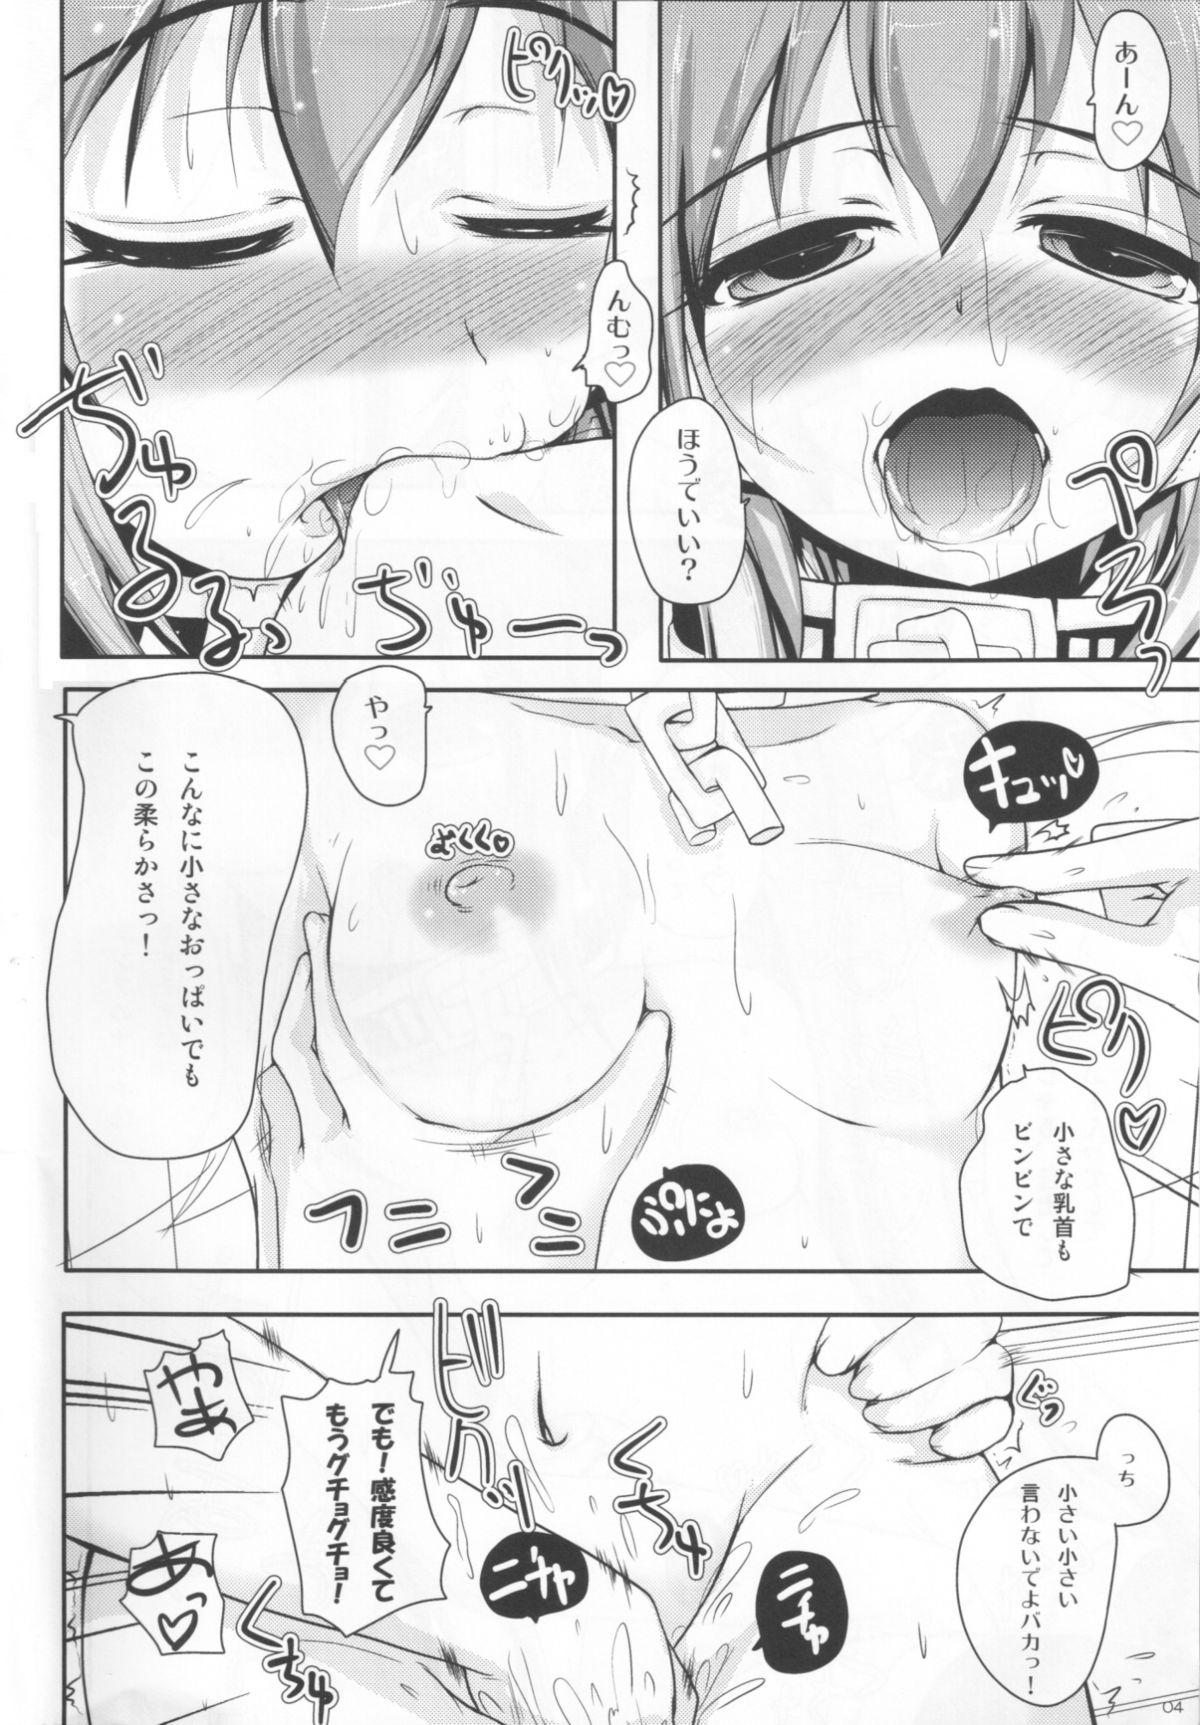 HD Nymph to chuchu!3 - Sora no otoshimono Pendeja - Page 5